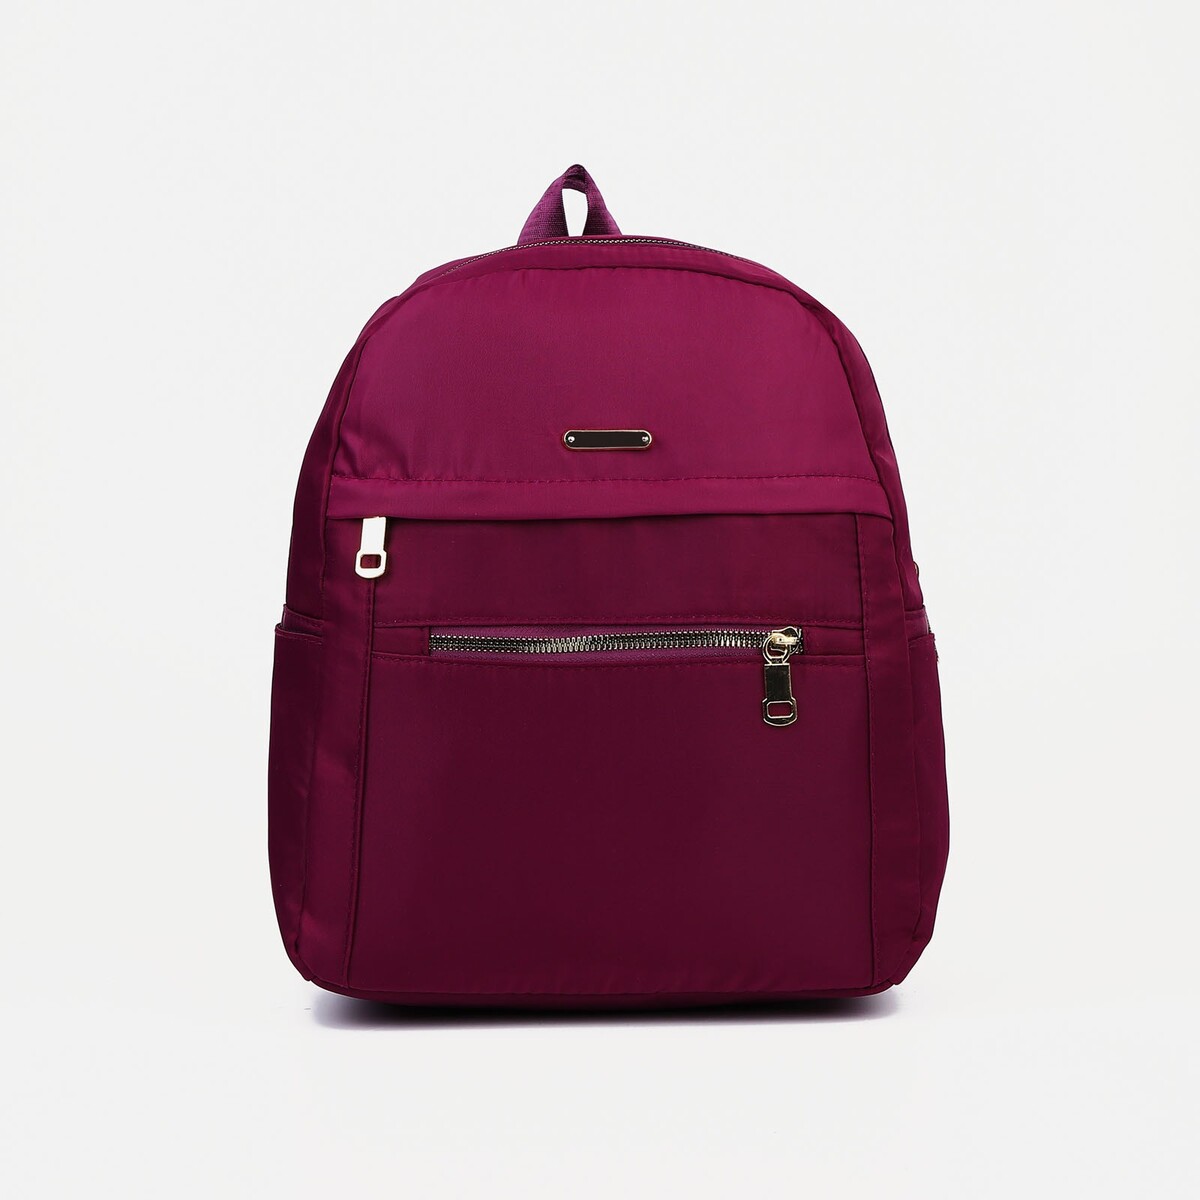 Рюкзак на молнии, цвет фиолетовый, No brand